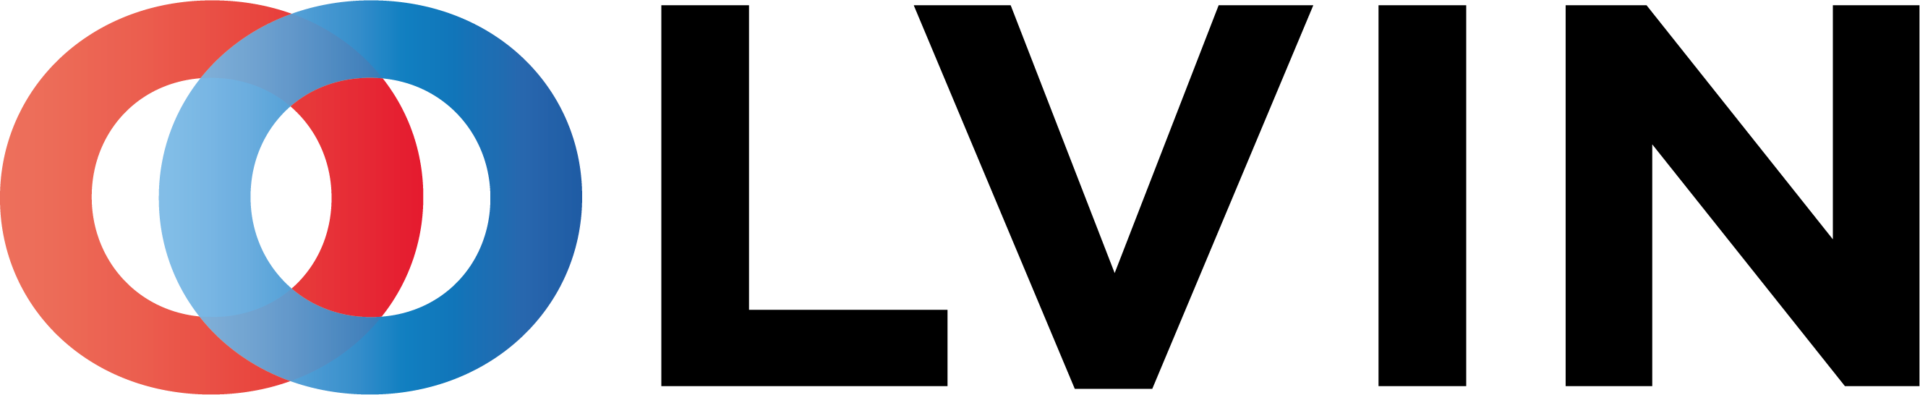 Olvin logo